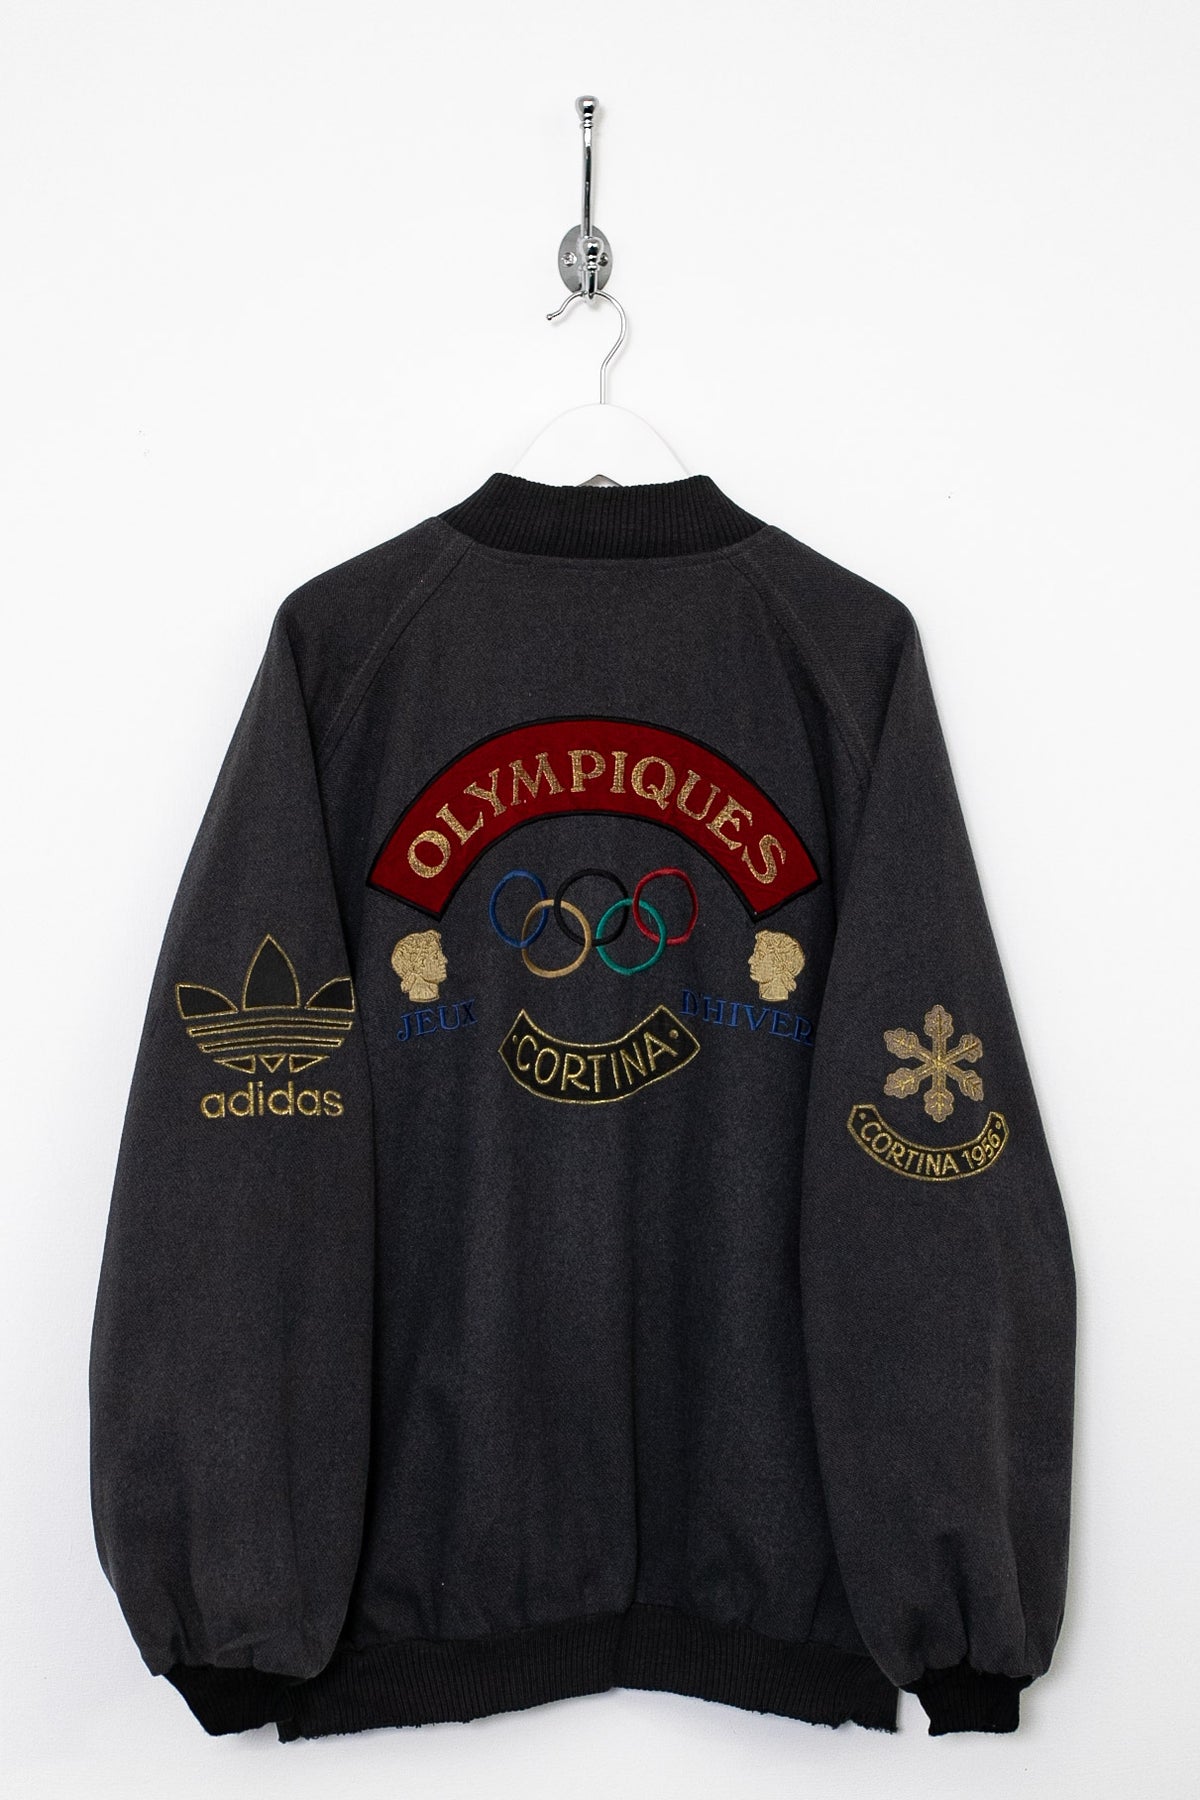 Rare 80s Adidas Olympics Grenoble Jacket (XL)